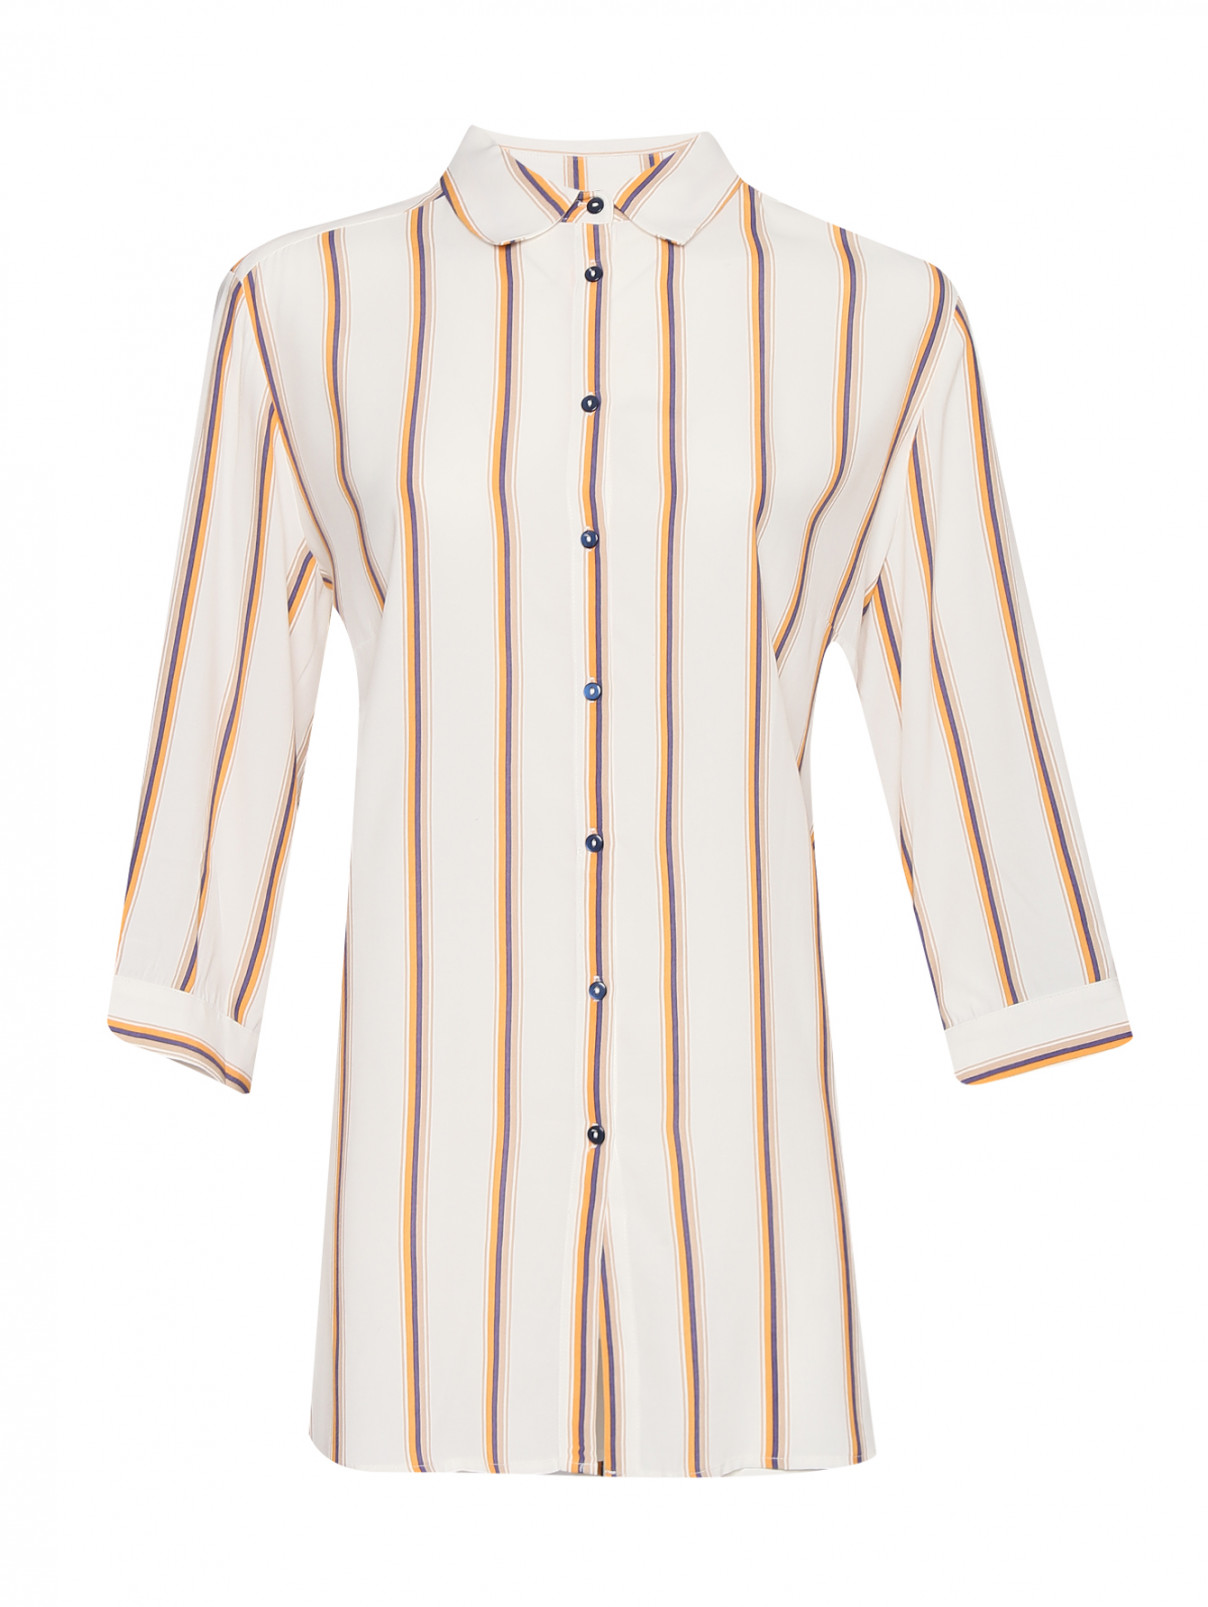 Блуза свободного кроя с узором полоска Elena Miro  –  Общий вид  – Цвет:  Белый